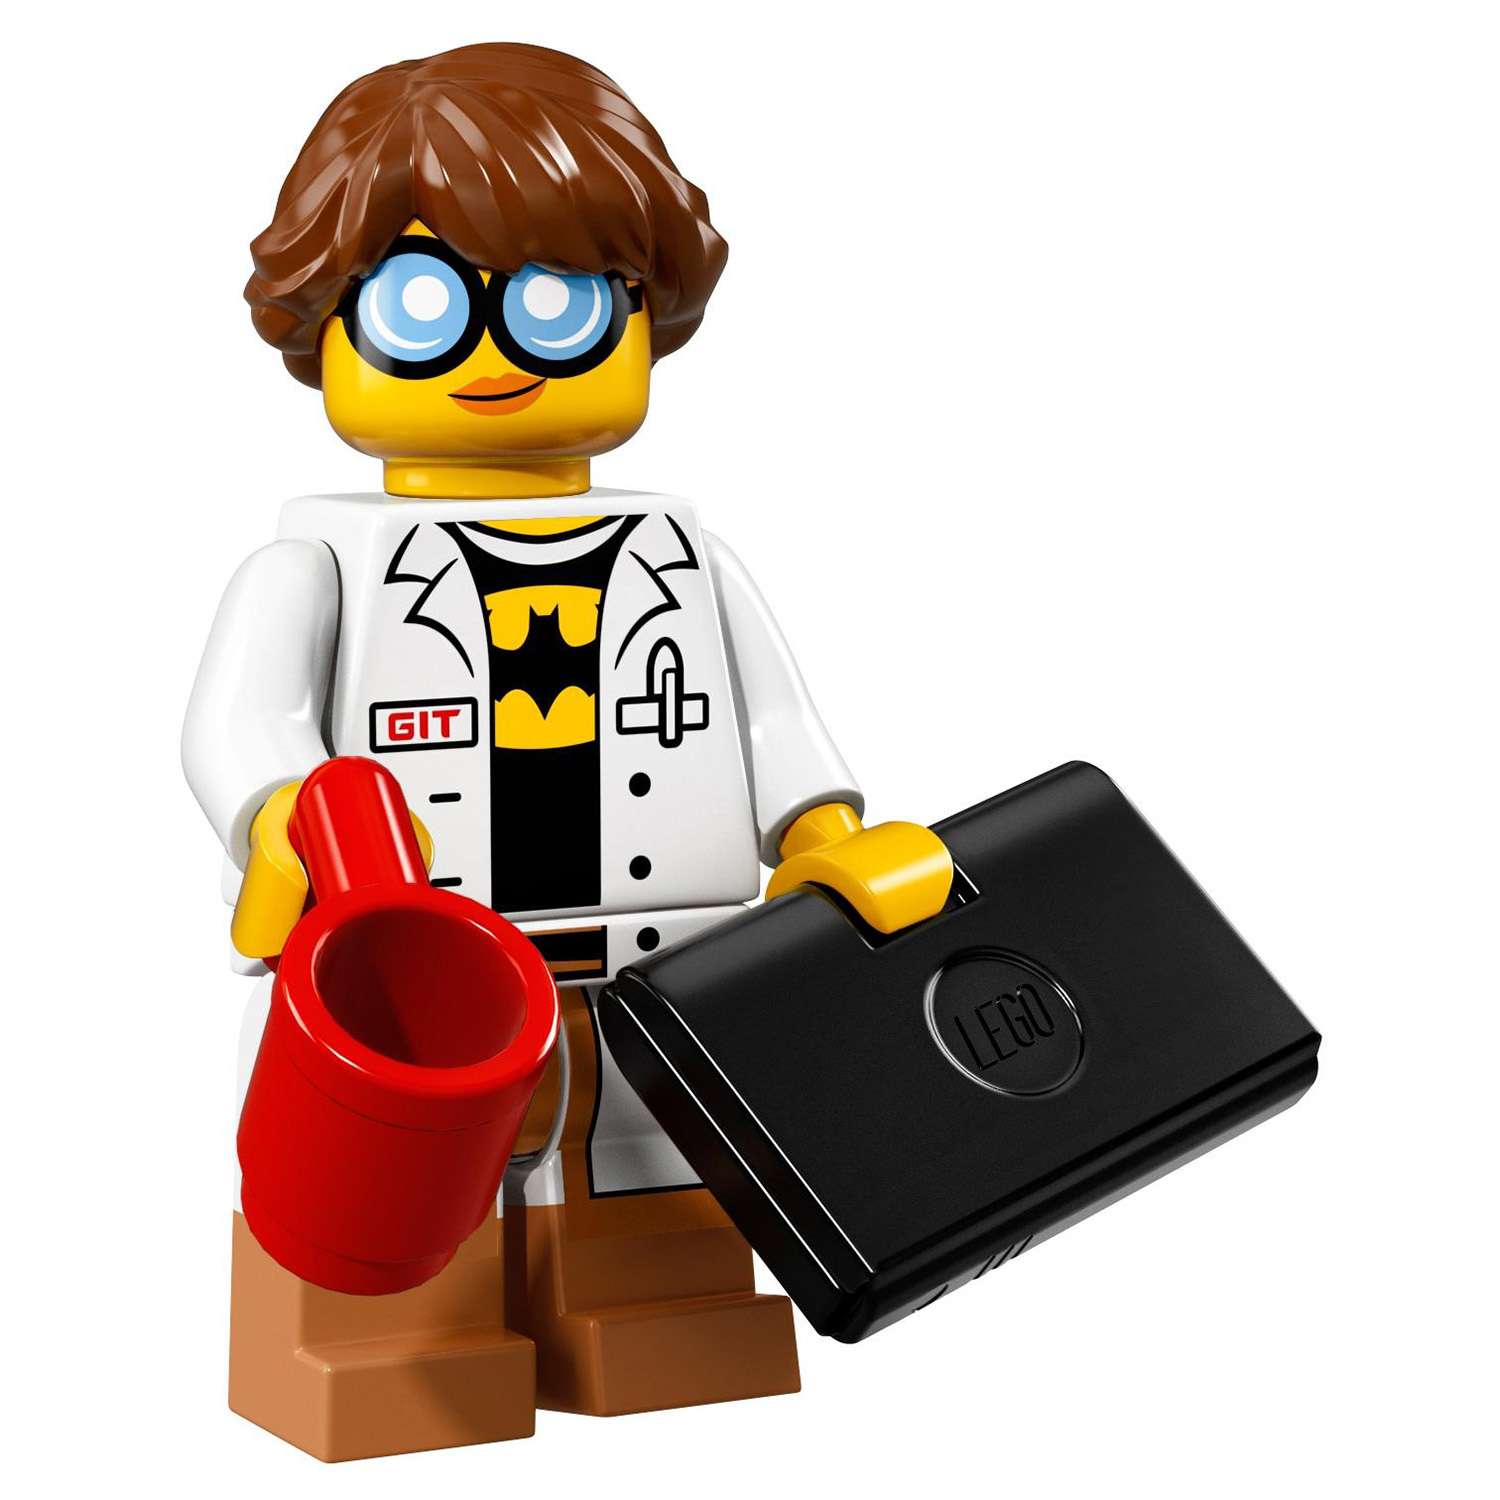 Конструктор LEGO Minifigures Минифигурки ФИЛЬМ: НИНДЗЯГО (71019) в ассортименте - фото 38